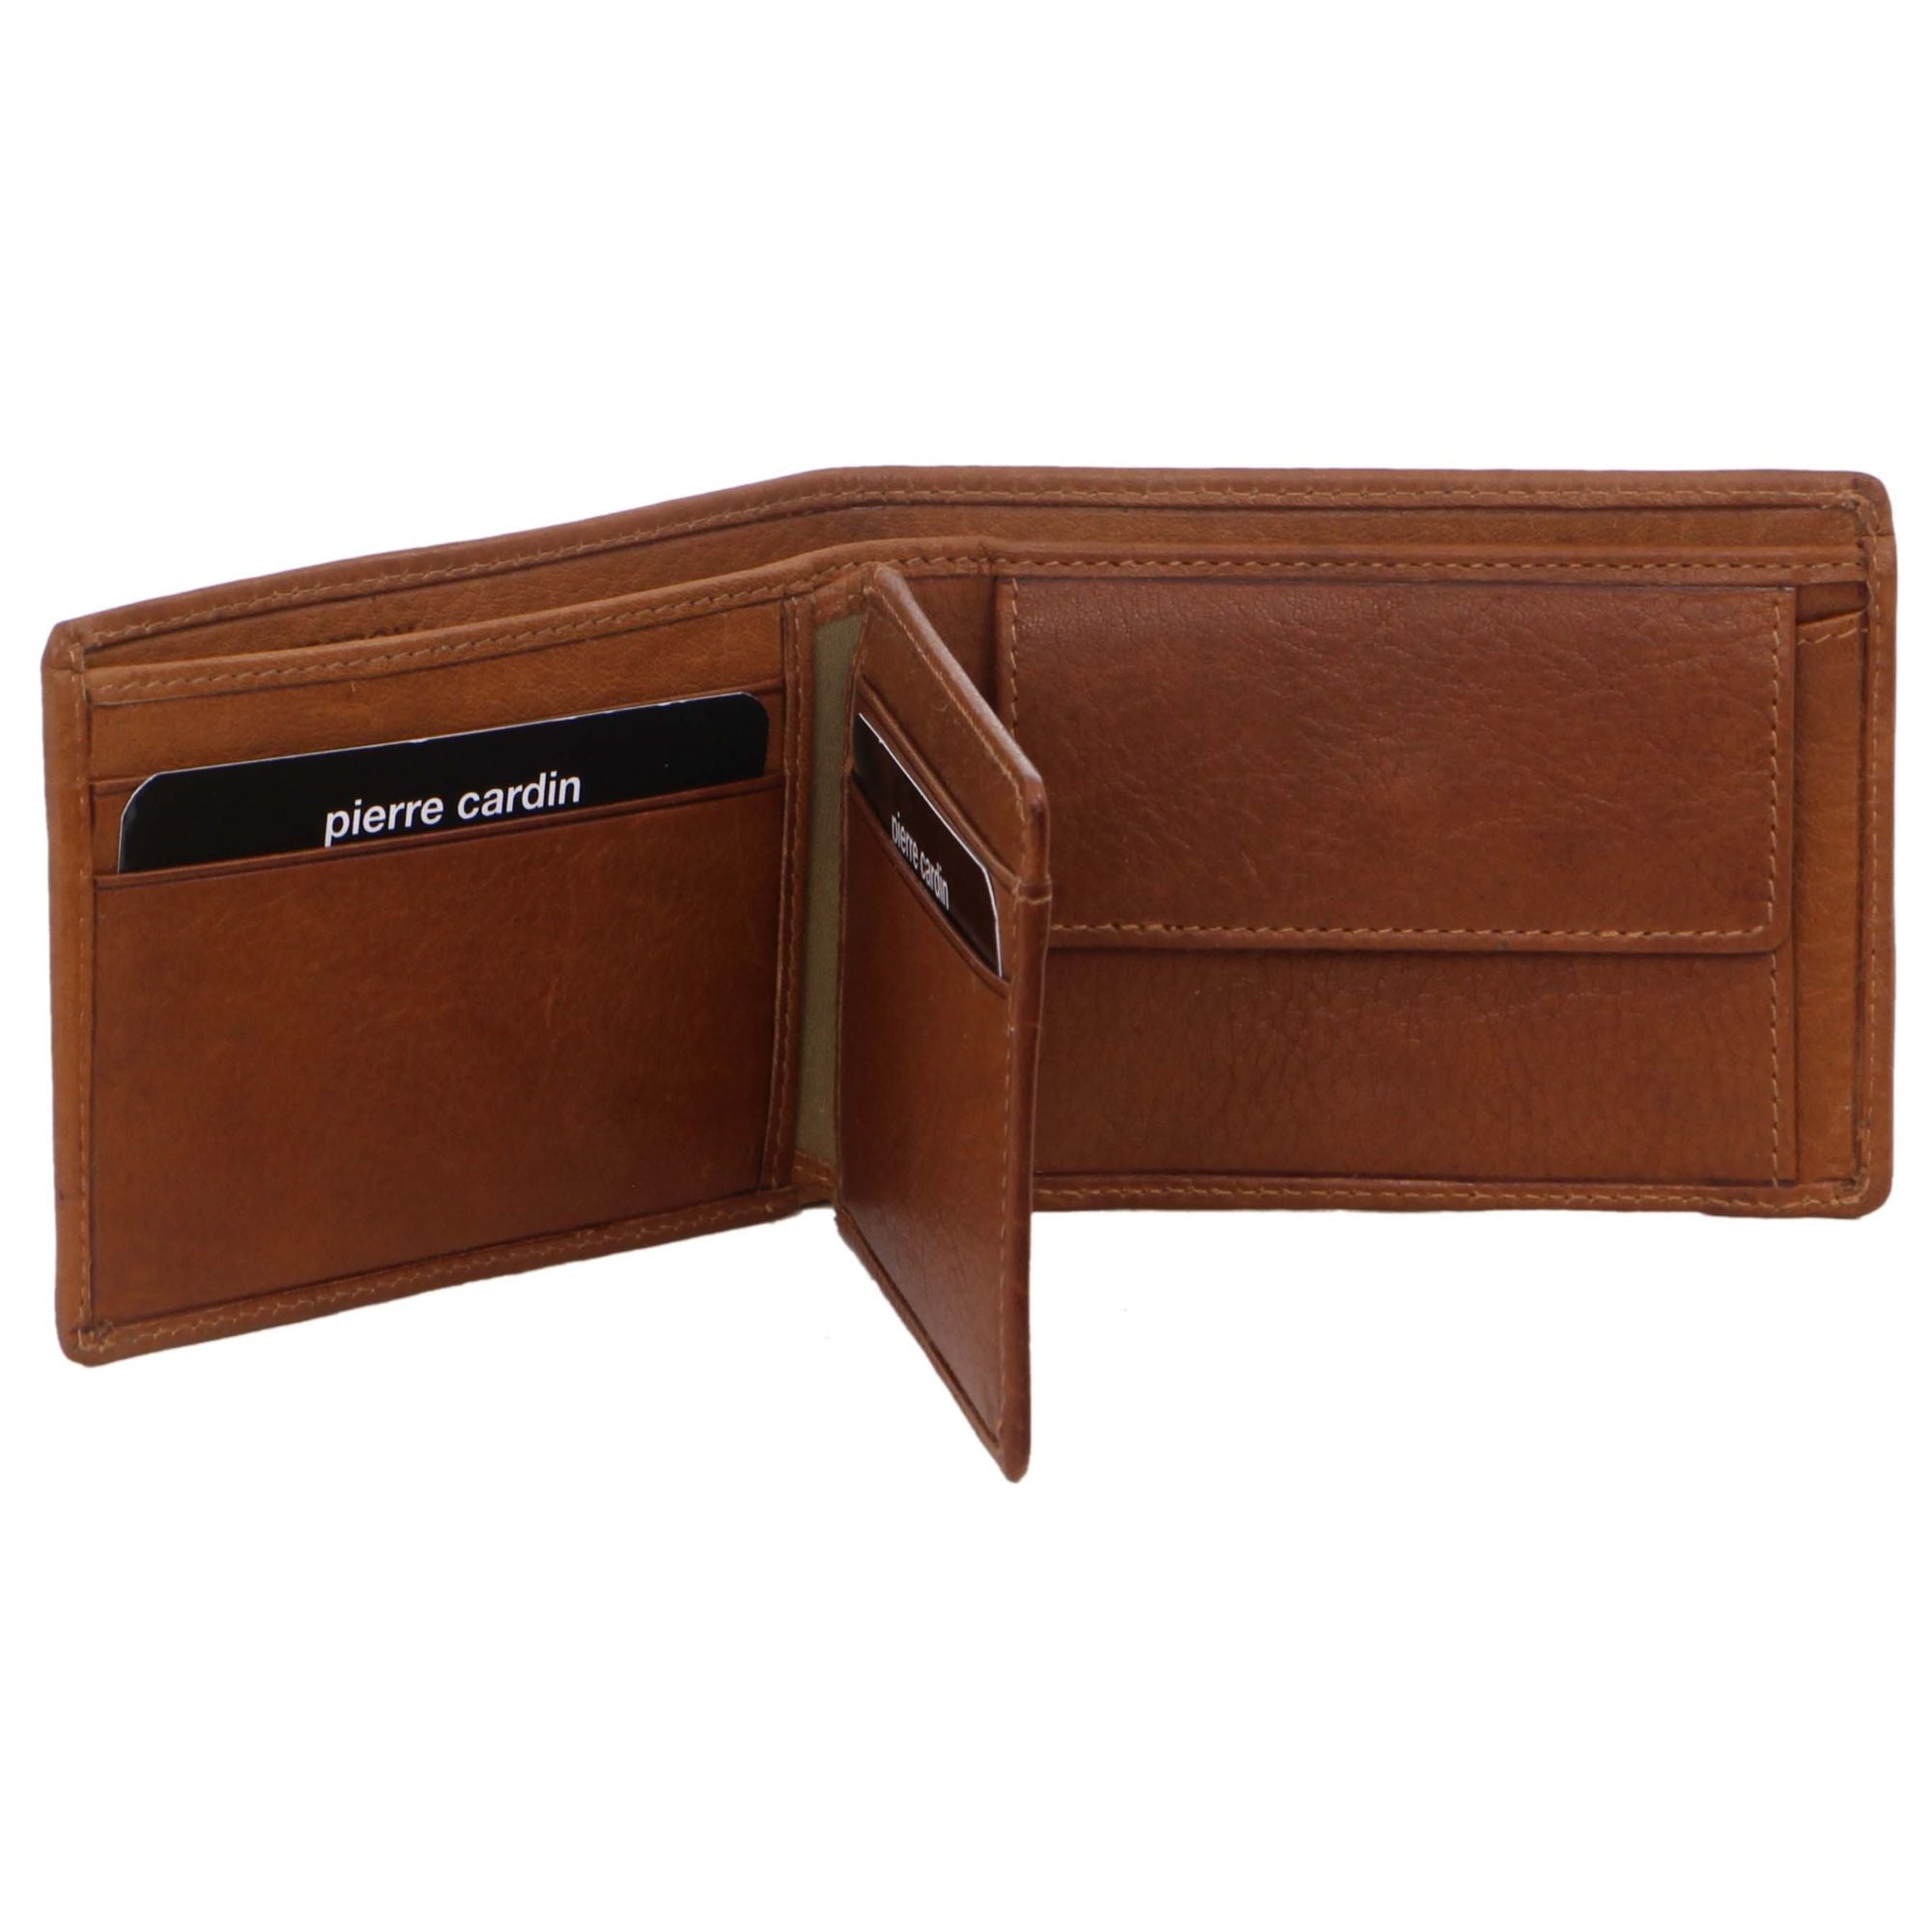 Pierre Cardin Rustic Leather Men's Bi-Fold Wallet in Tan